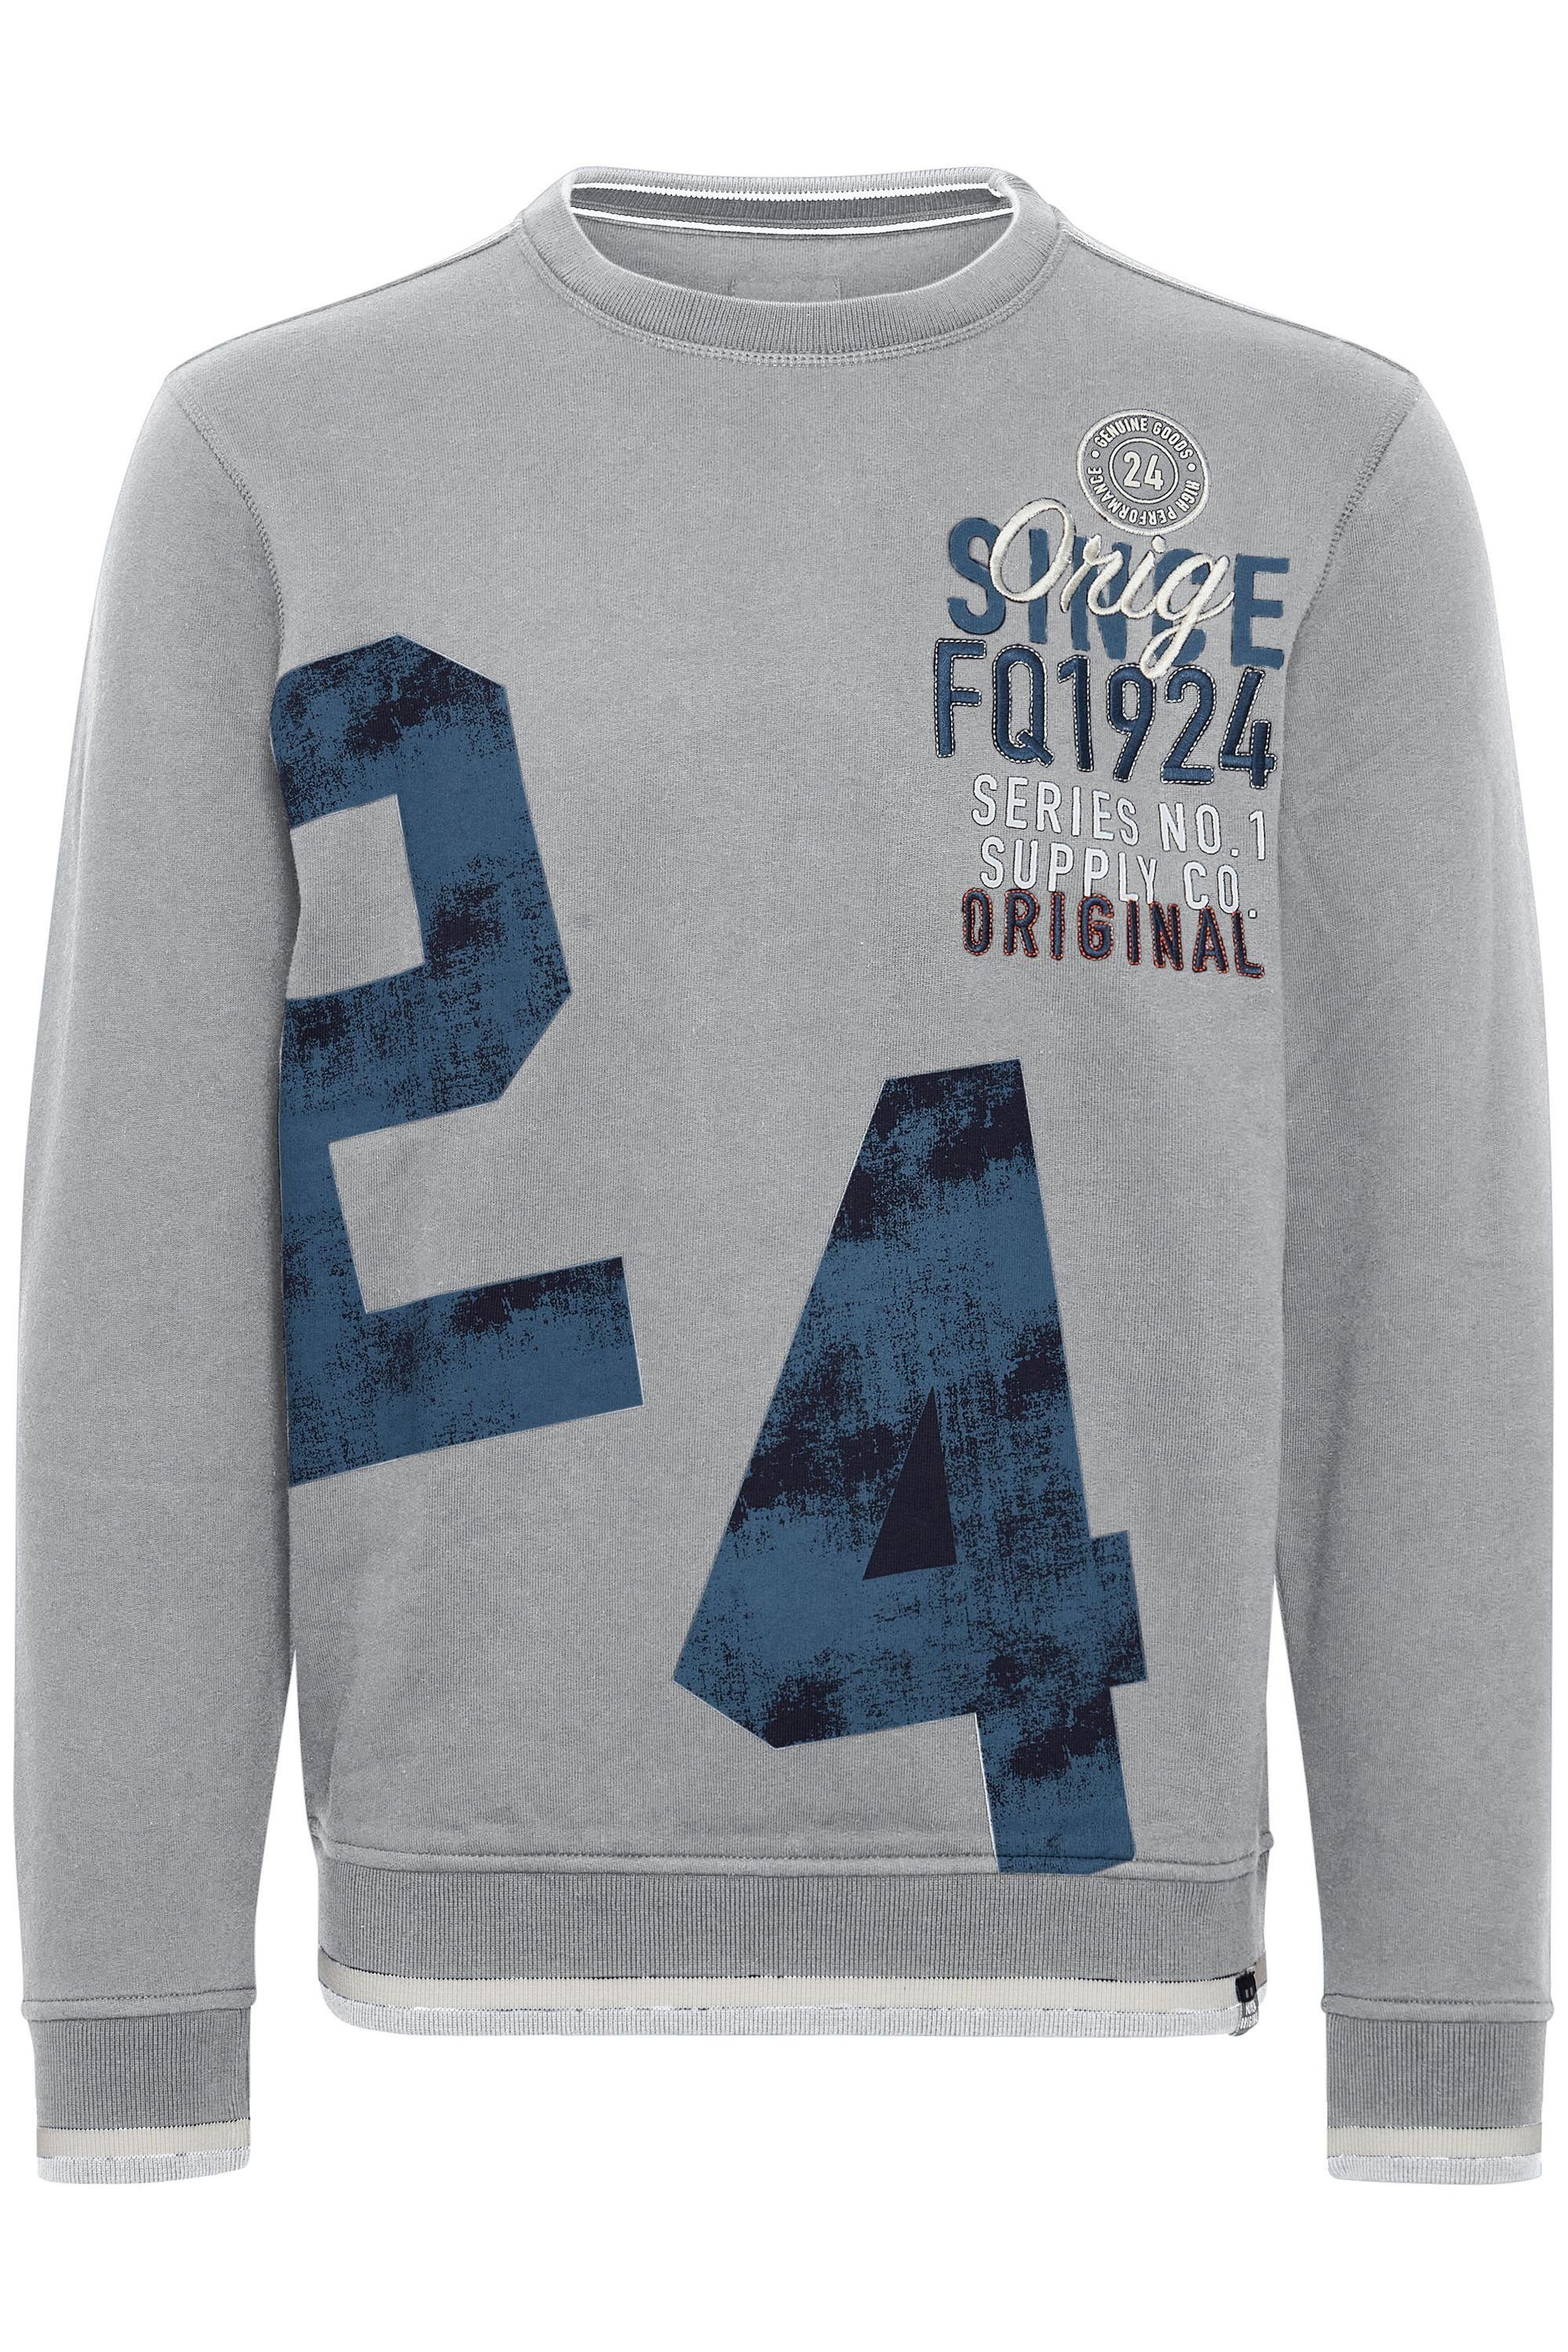 Zink Sweatshirt FQ1924 FQMangus Mix FQ1924